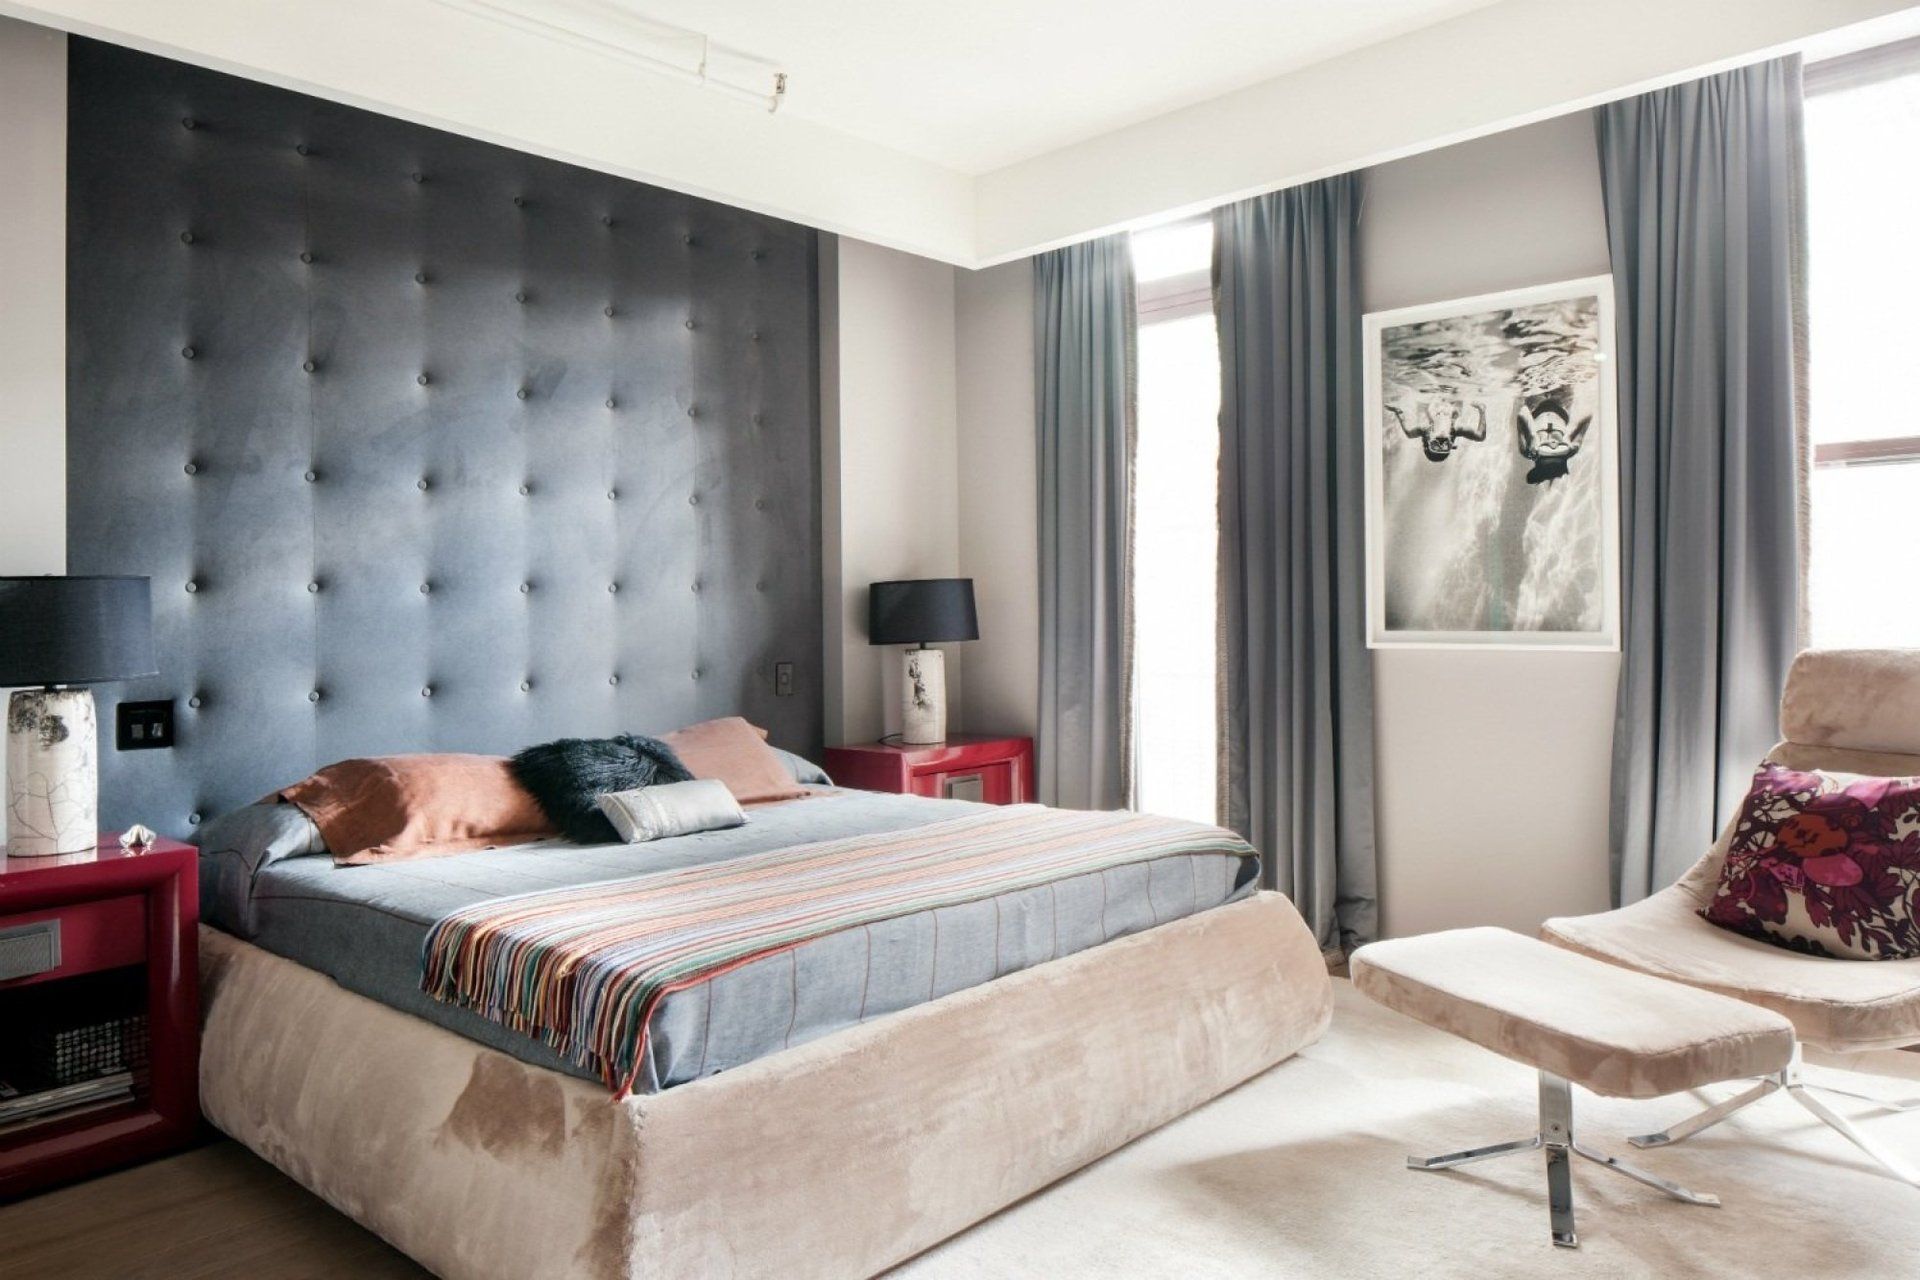 Революция в дизайне спальни. Изголовье кровати переходящее в стену